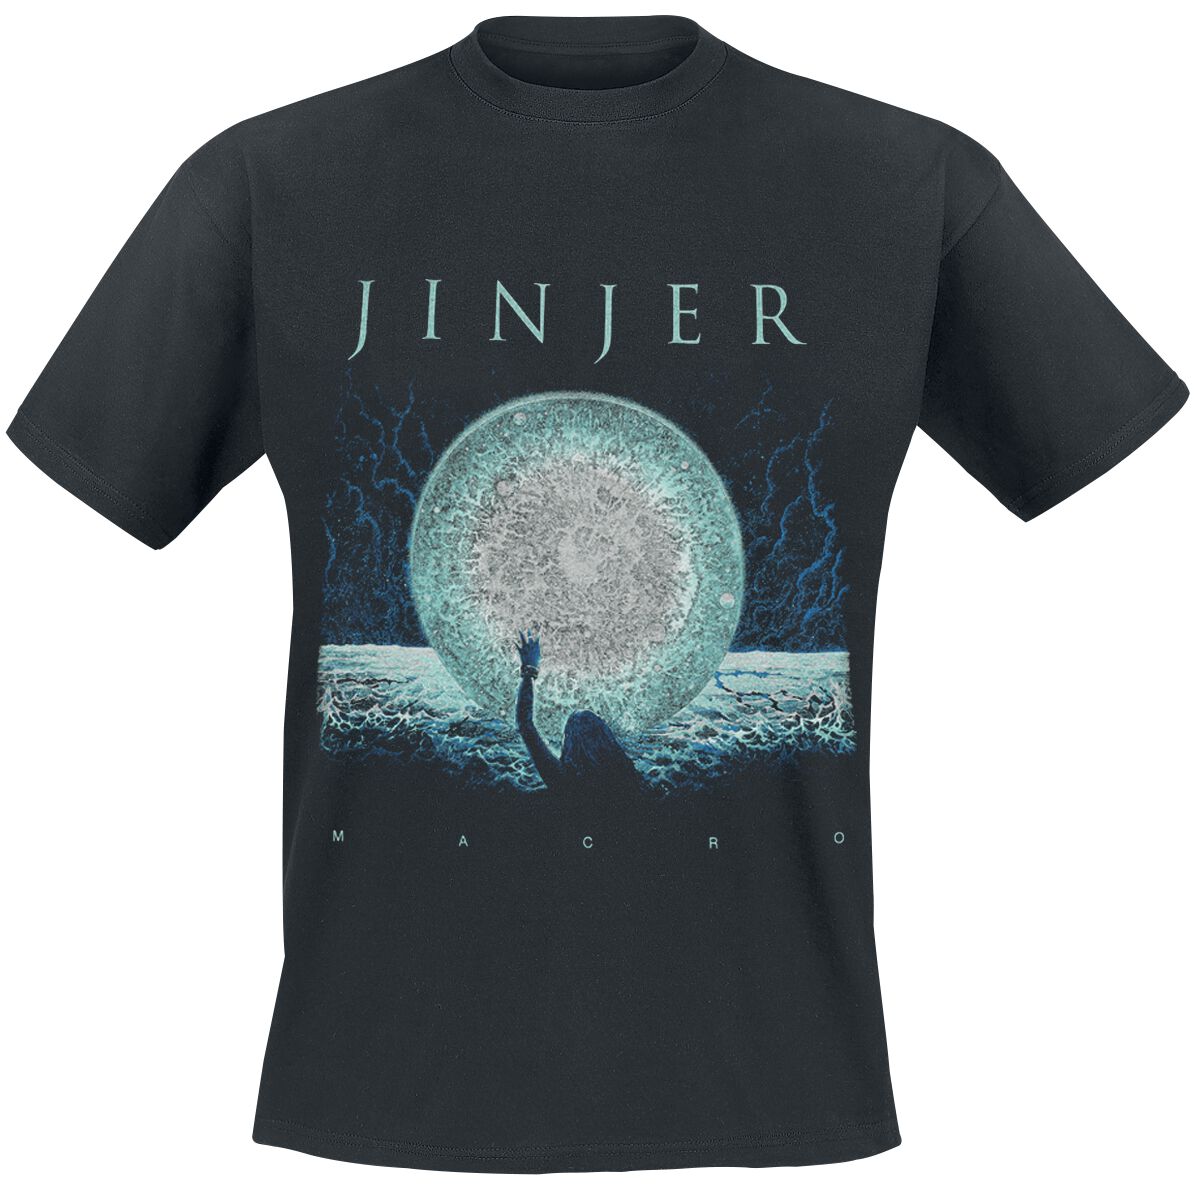 Jinjer T-Shirt - Macro - S bis 3XL - für Männer - Größe S - schwarz  - Lizenziertes Merchandise!